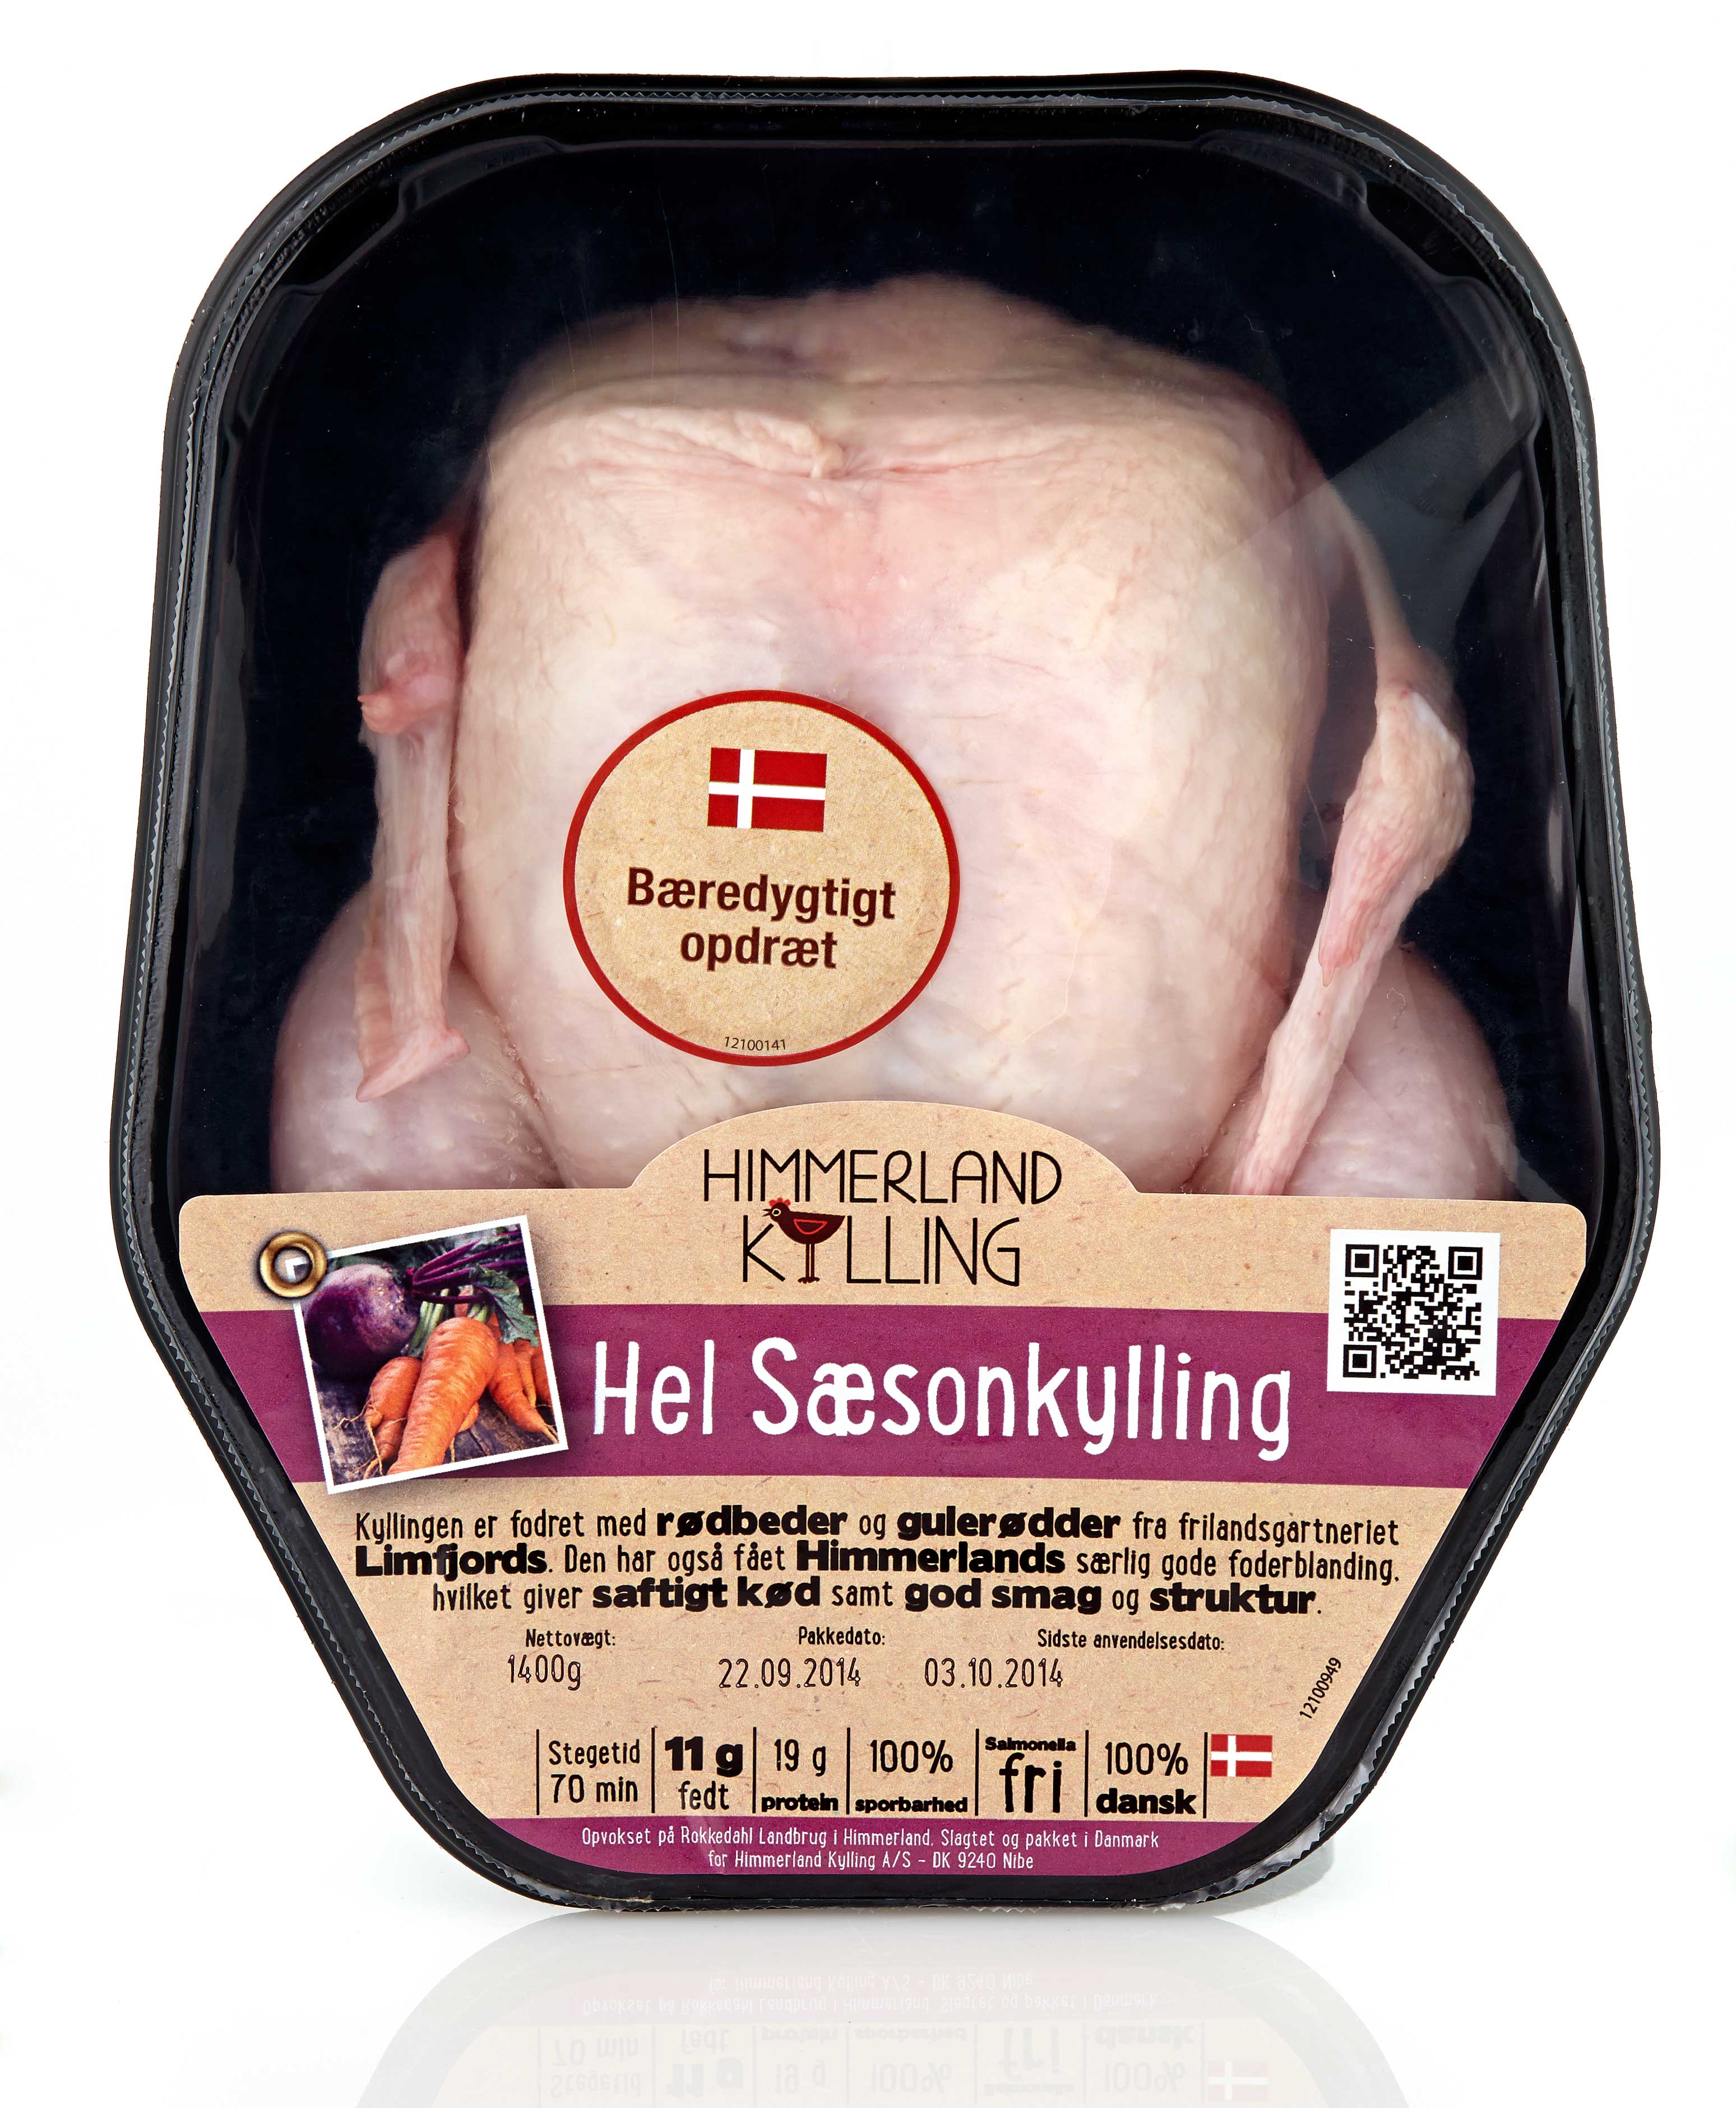 Himmerland Saison Huhn Verpackungsdesign – Himmerland Kylling